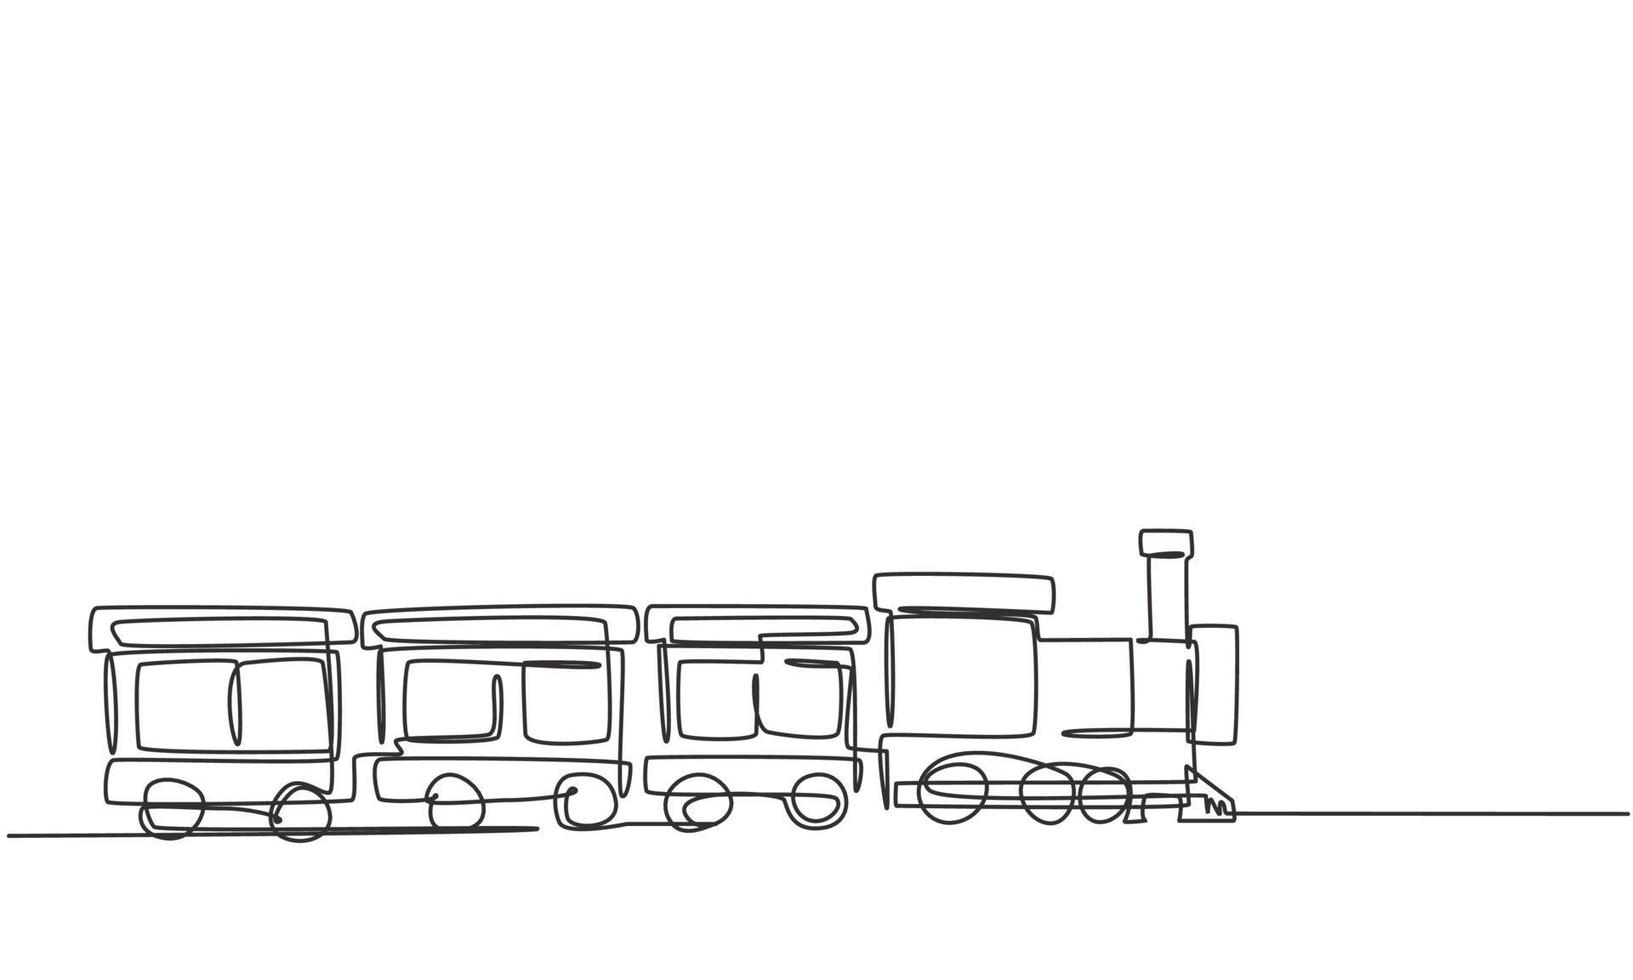 Beeldhouwwerk Schrijf op Nieuwe aankomst enkele lijntekening van een treinlocomotief met drie rijtuigen in de vorm  van een rondzwervend stoomsysteem in een pretpark om passagiers te  vervoeren. een lijn tekenen ontwerp grafische vectorillustratie. 3592297 -  Download Free